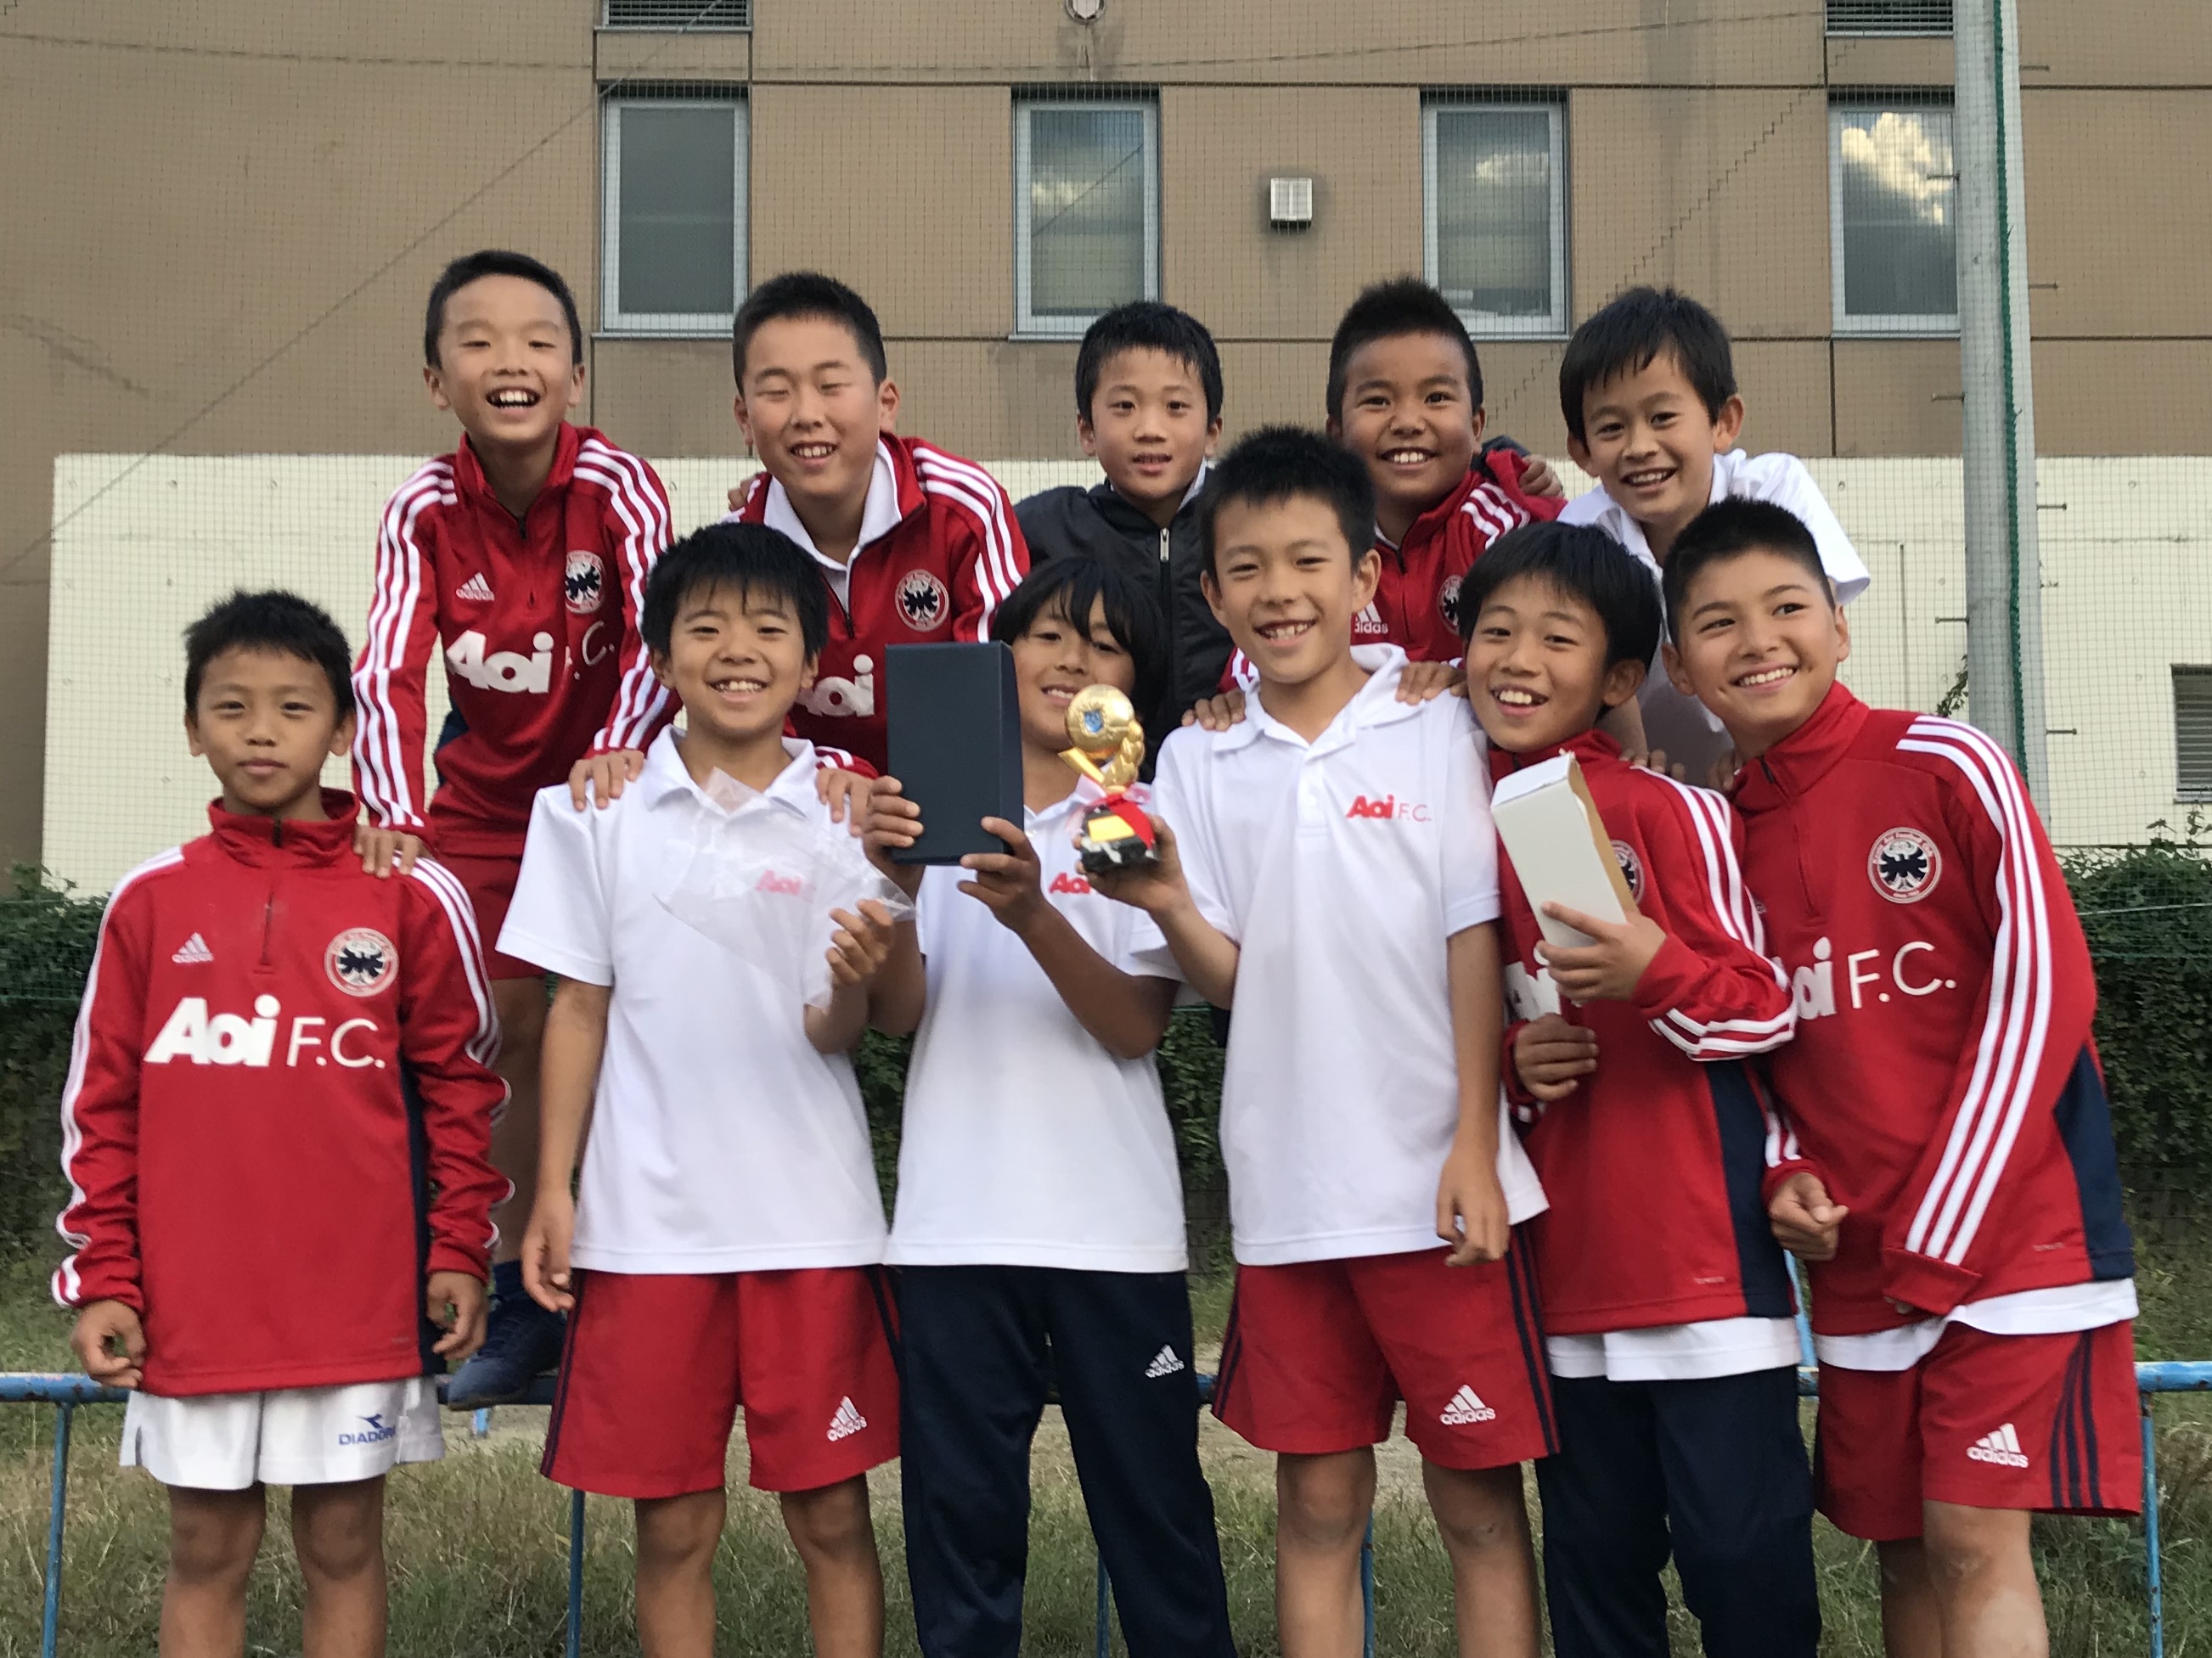 インフォメーション 18 10 京都葵フットボールクラブ 幼児 小学生 中学生対象のサッカークラブ